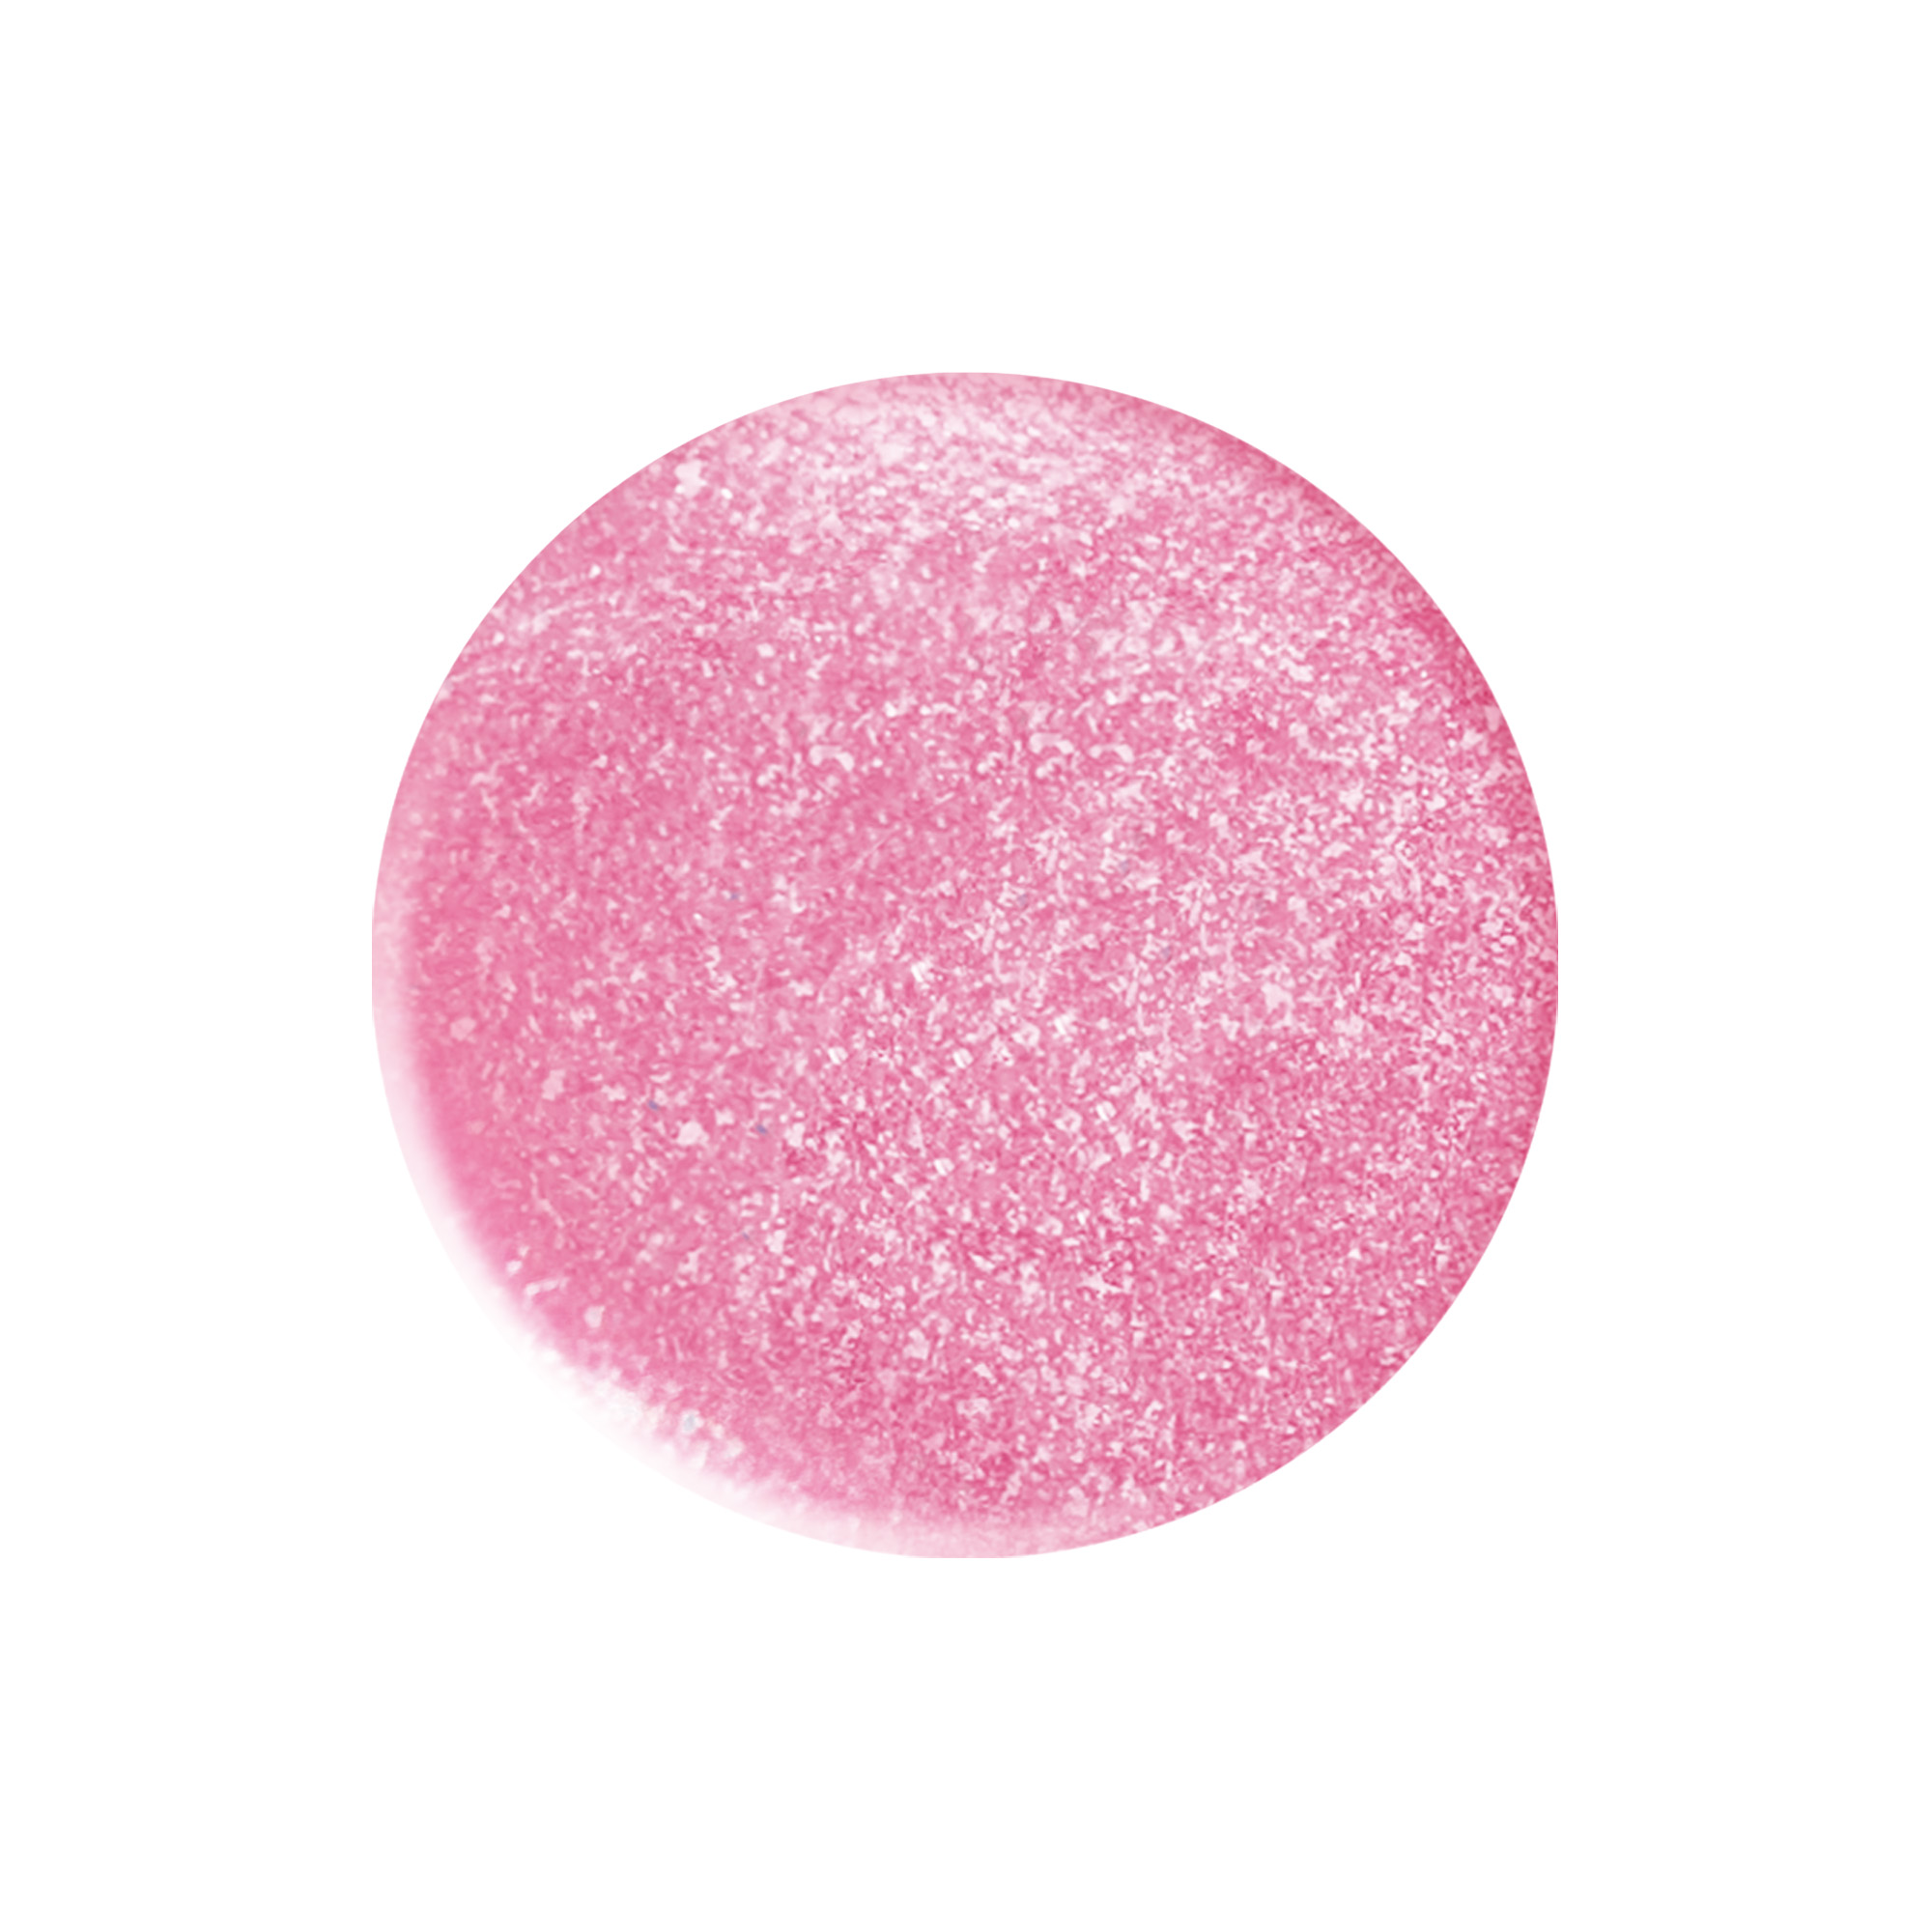 Smalto Star Dust Pink rosa glitter 10 ml TNS